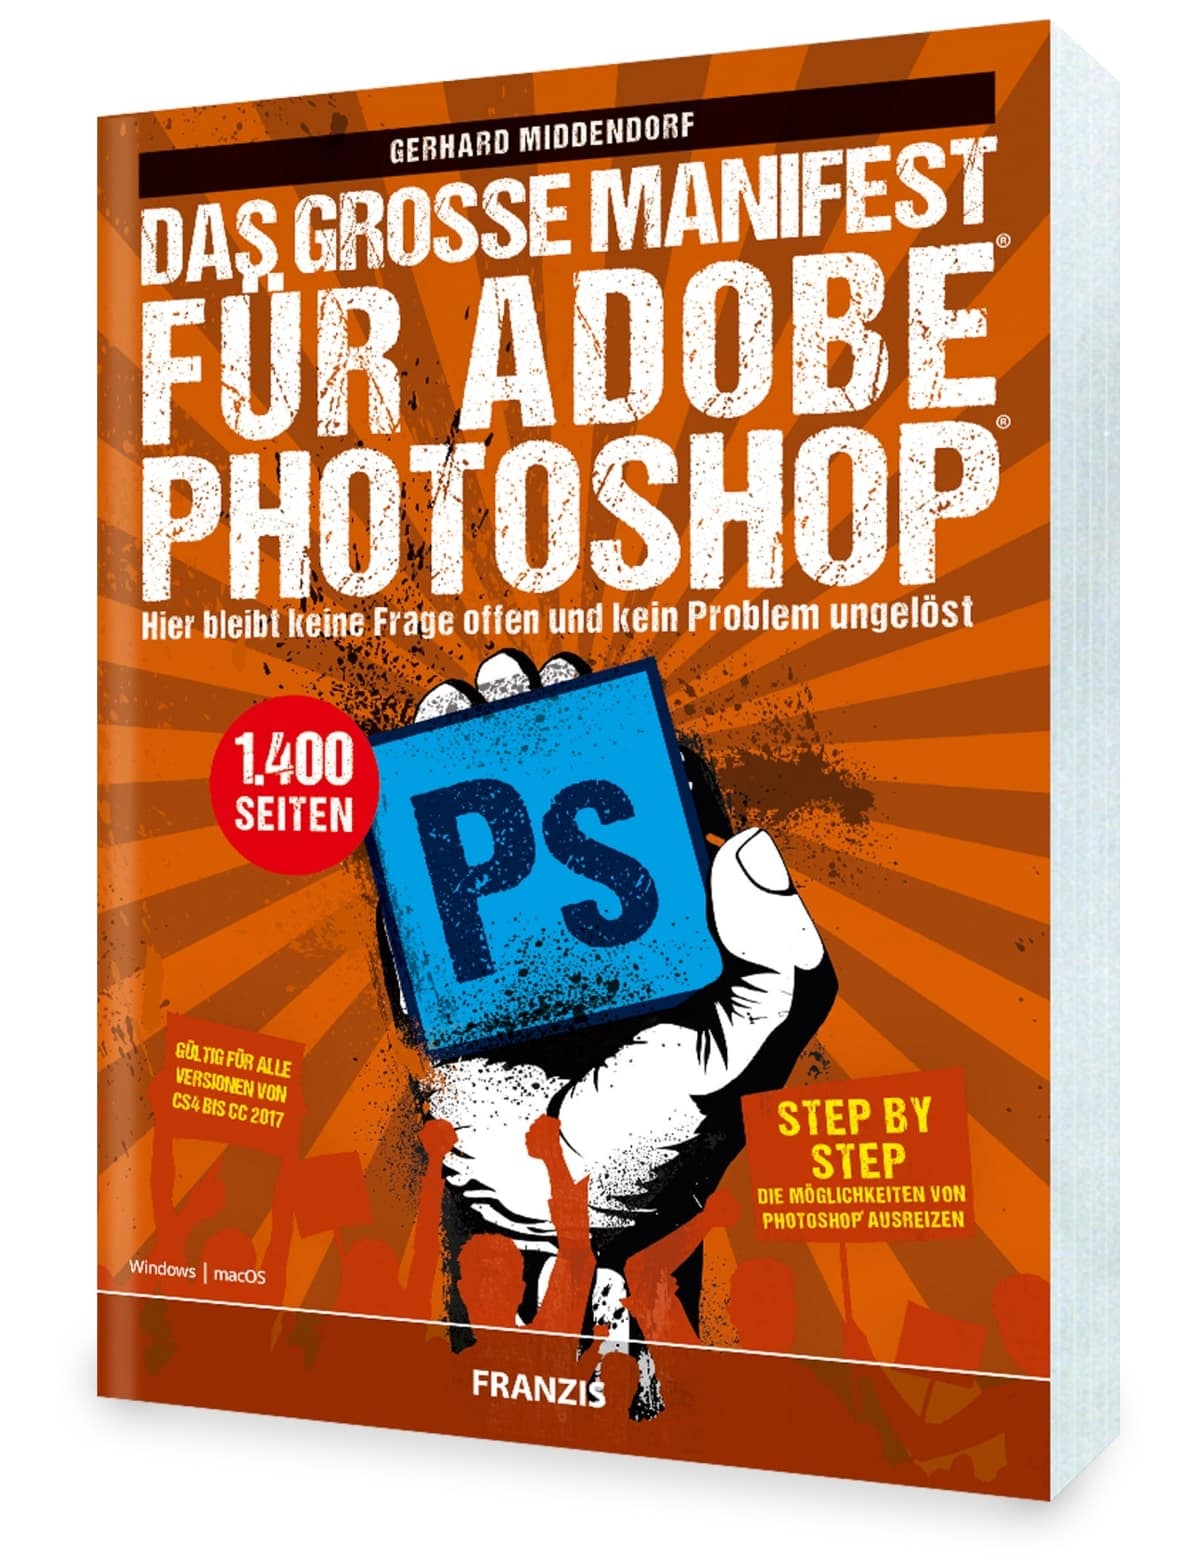 FRANZIS PDF Buch " Das grosse Manifest" für Adobe Photoshop